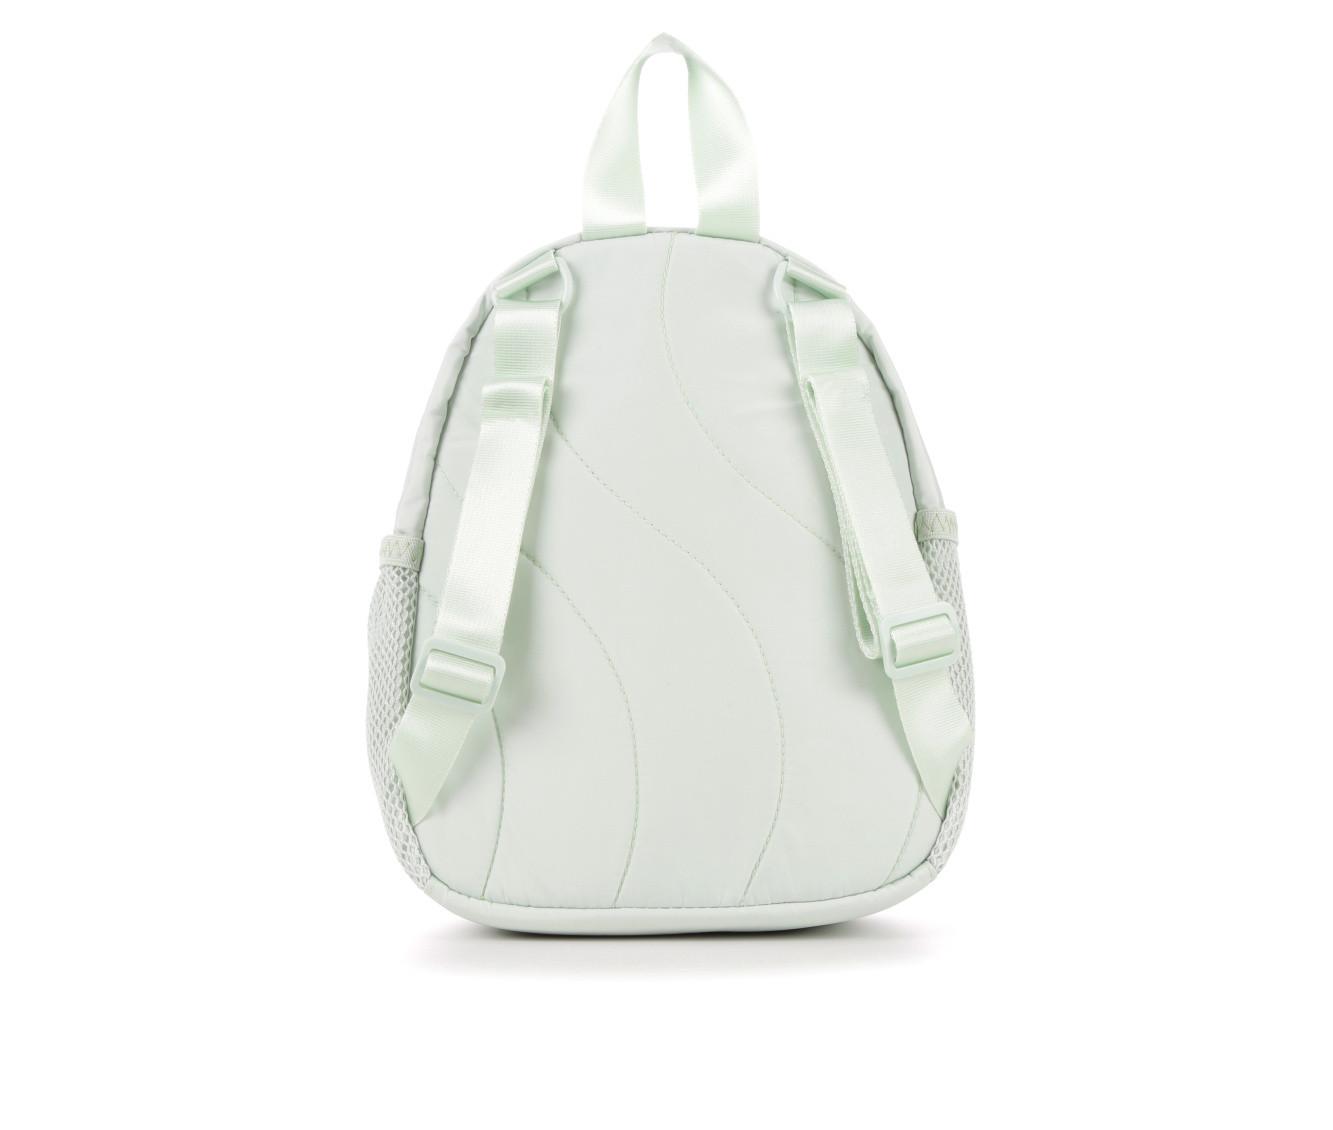 Adidas Linear III Mini Backpack